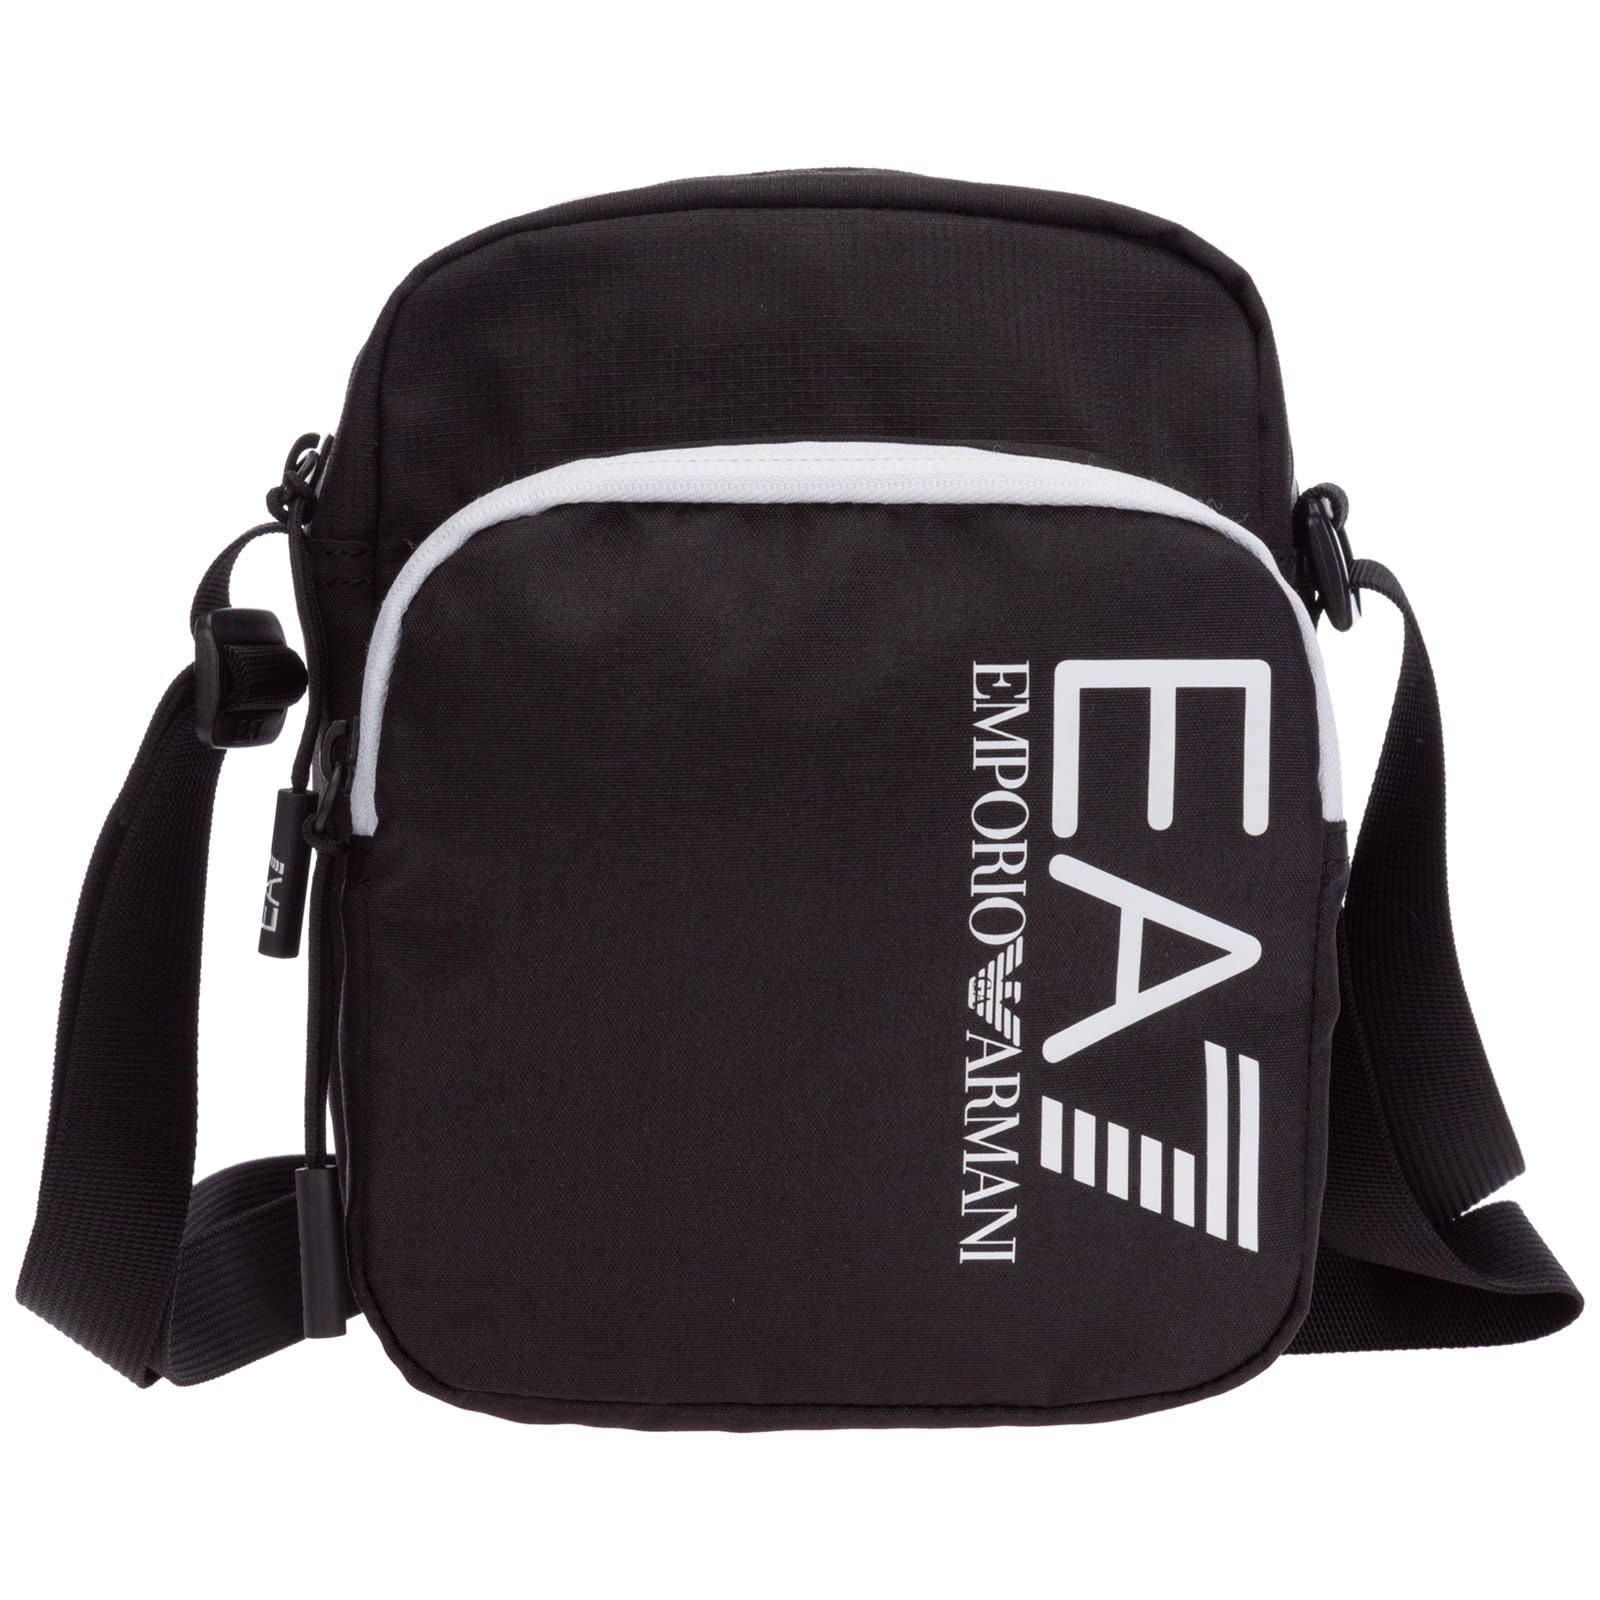 Emporio Armani Ea7 Ikonik Crossbody Bags